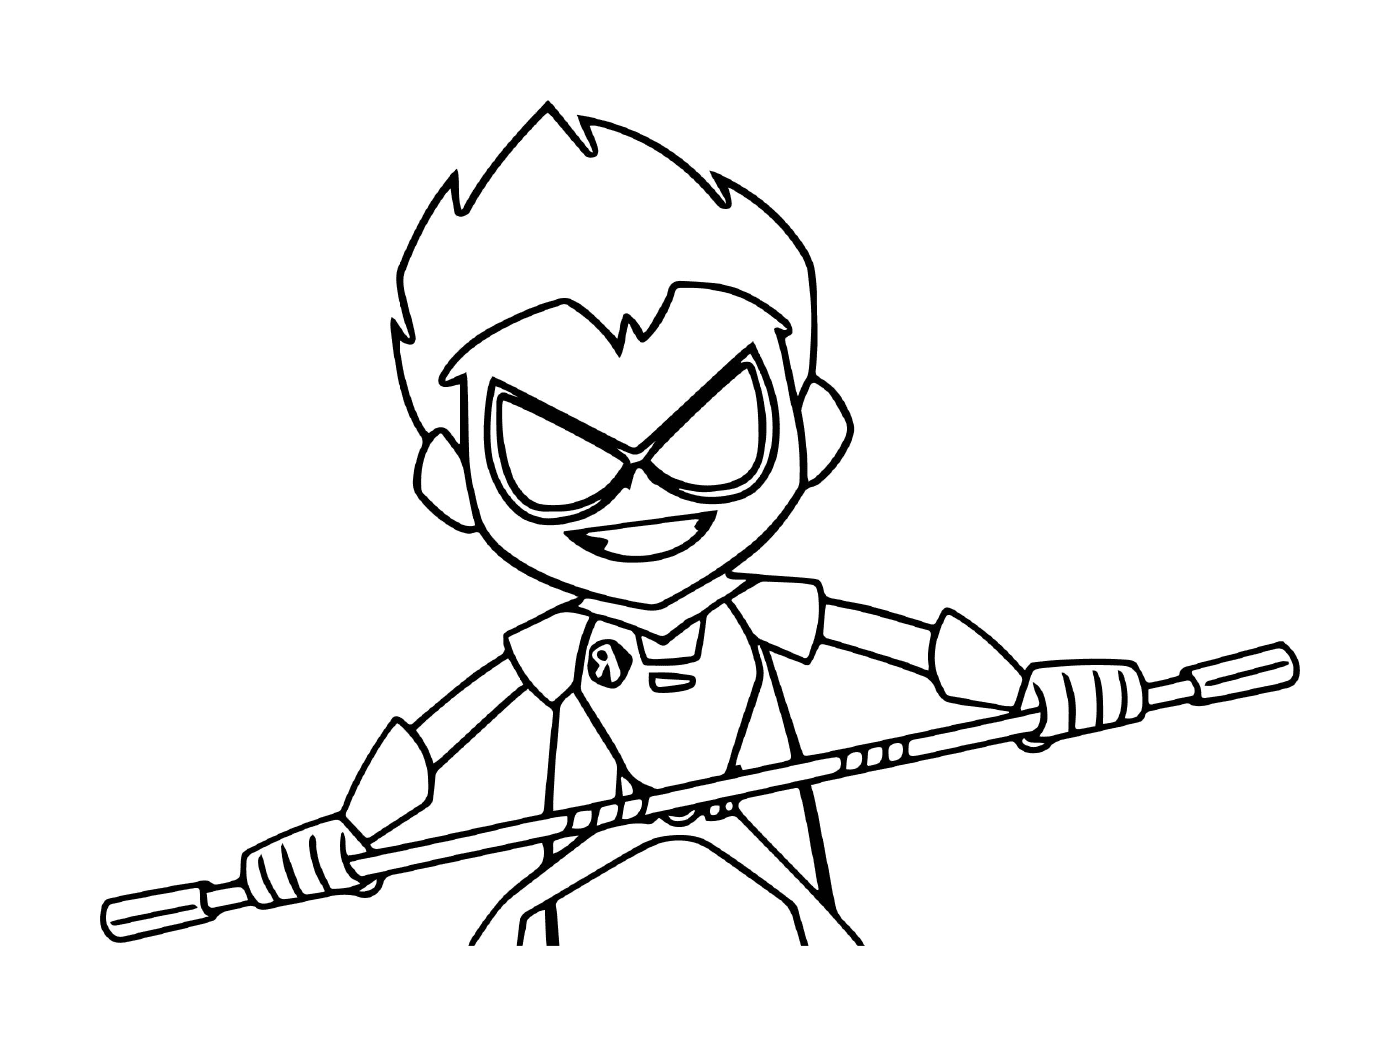   Robin défend vaillamment avec bâton 